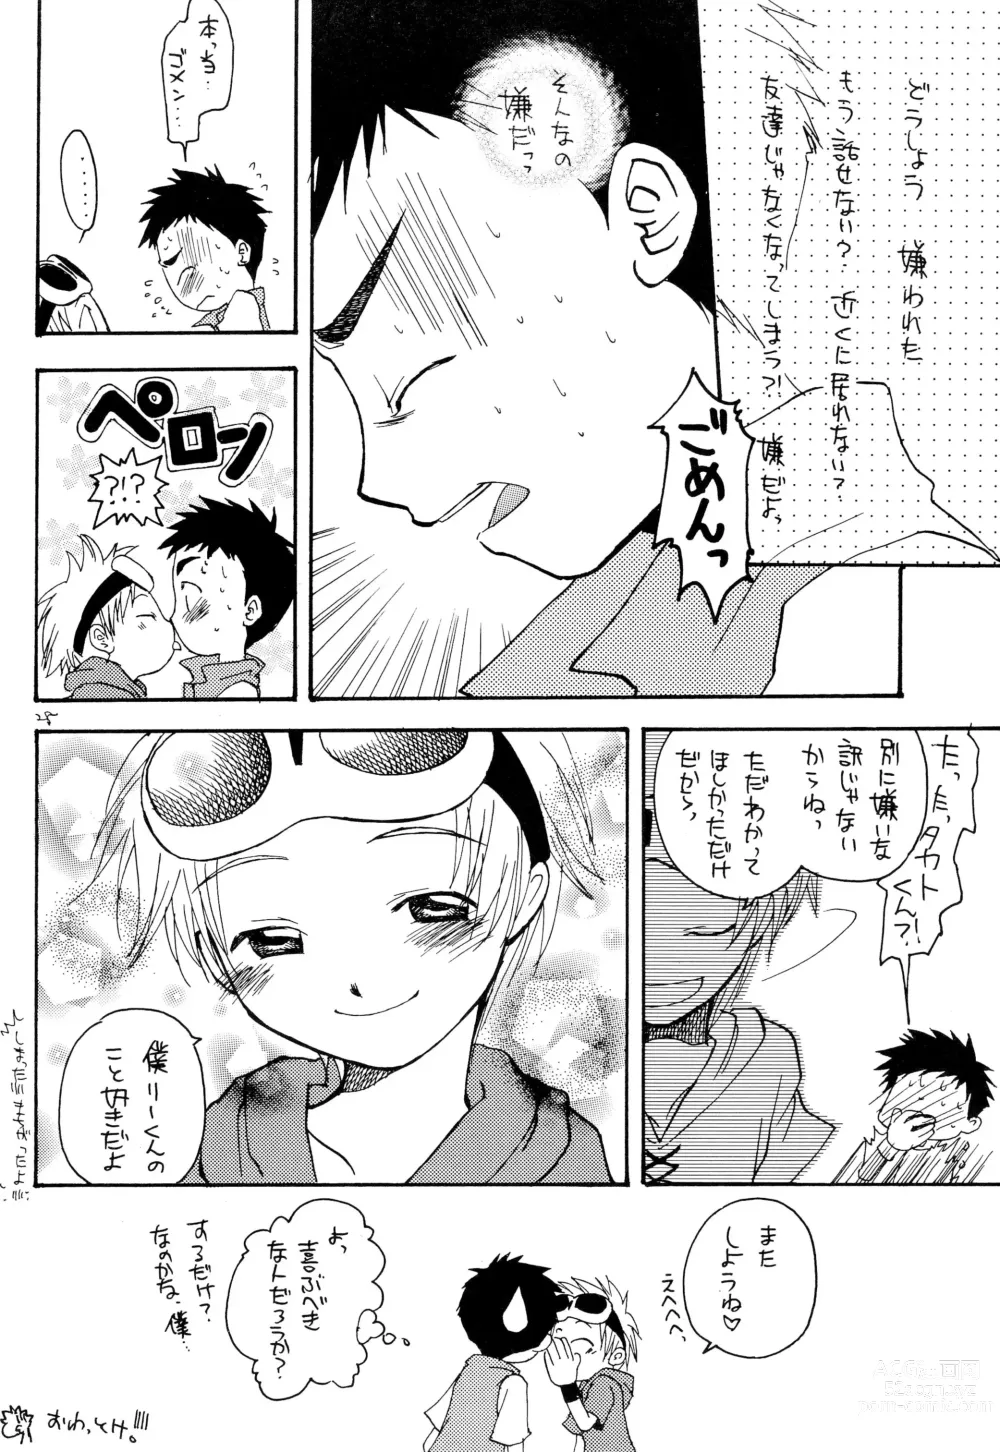 Page 30 of doujinshi LiTaka 2